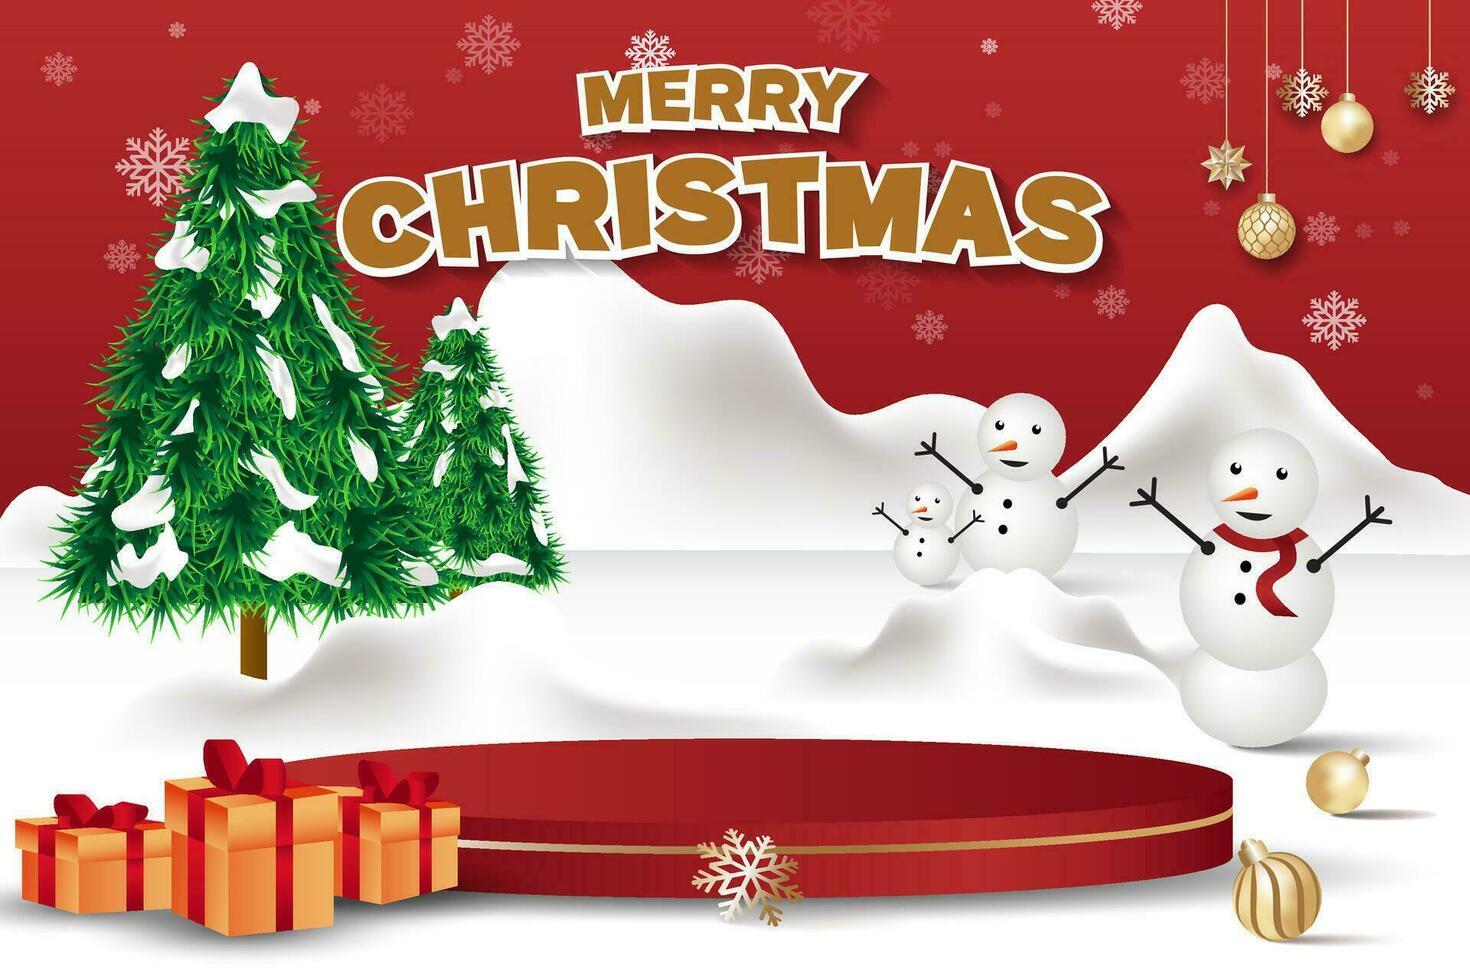 Kerstmis viering thema uitverkoop banier met sneeuw seizoen illustratie vector